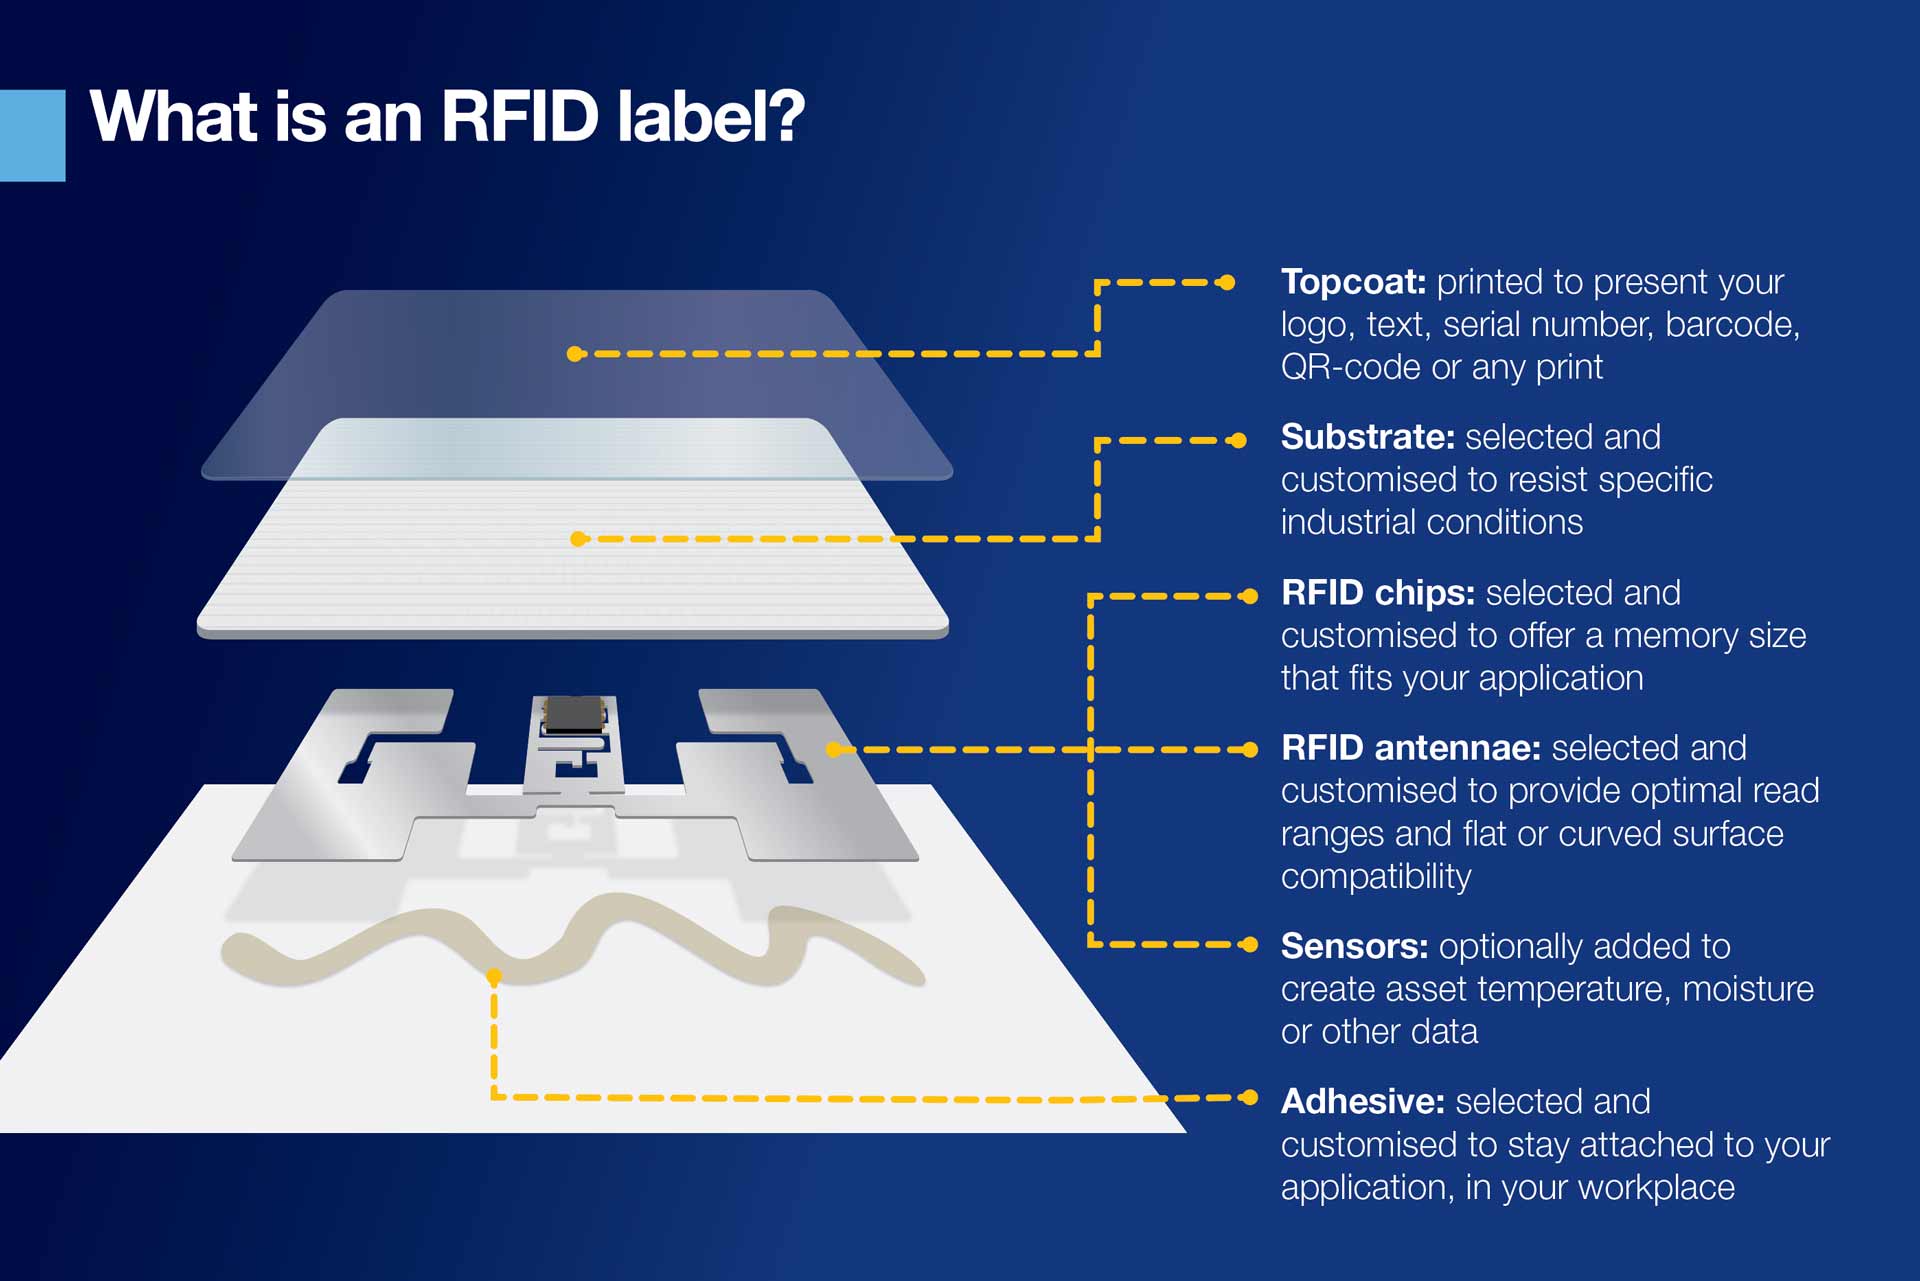 Infografiek waarin wordt uitgelegd wat een RFID-label is. De inhoud van deze grafiek wordt ook behandeld in het hoofdartikel van de blog.